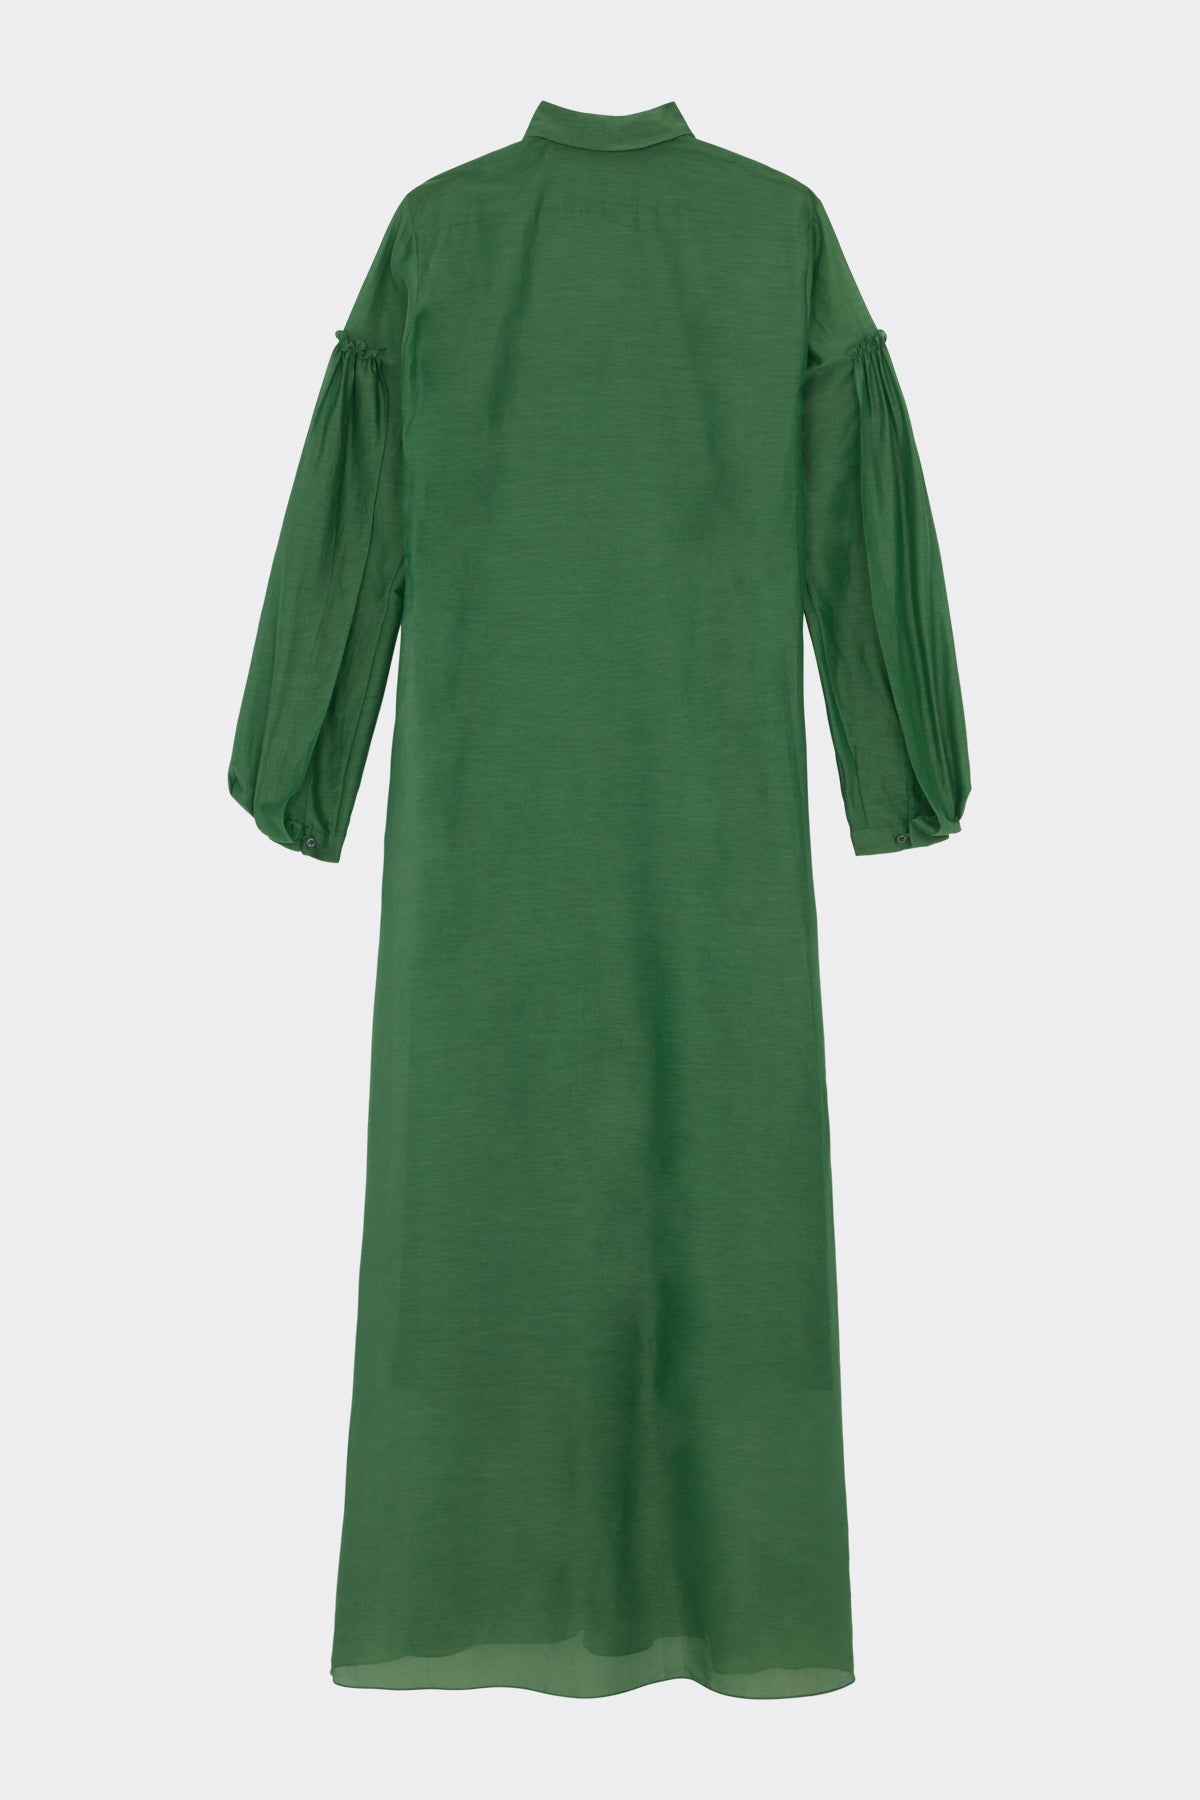 Jolene Dress in Bottle Green| Noon by Noor